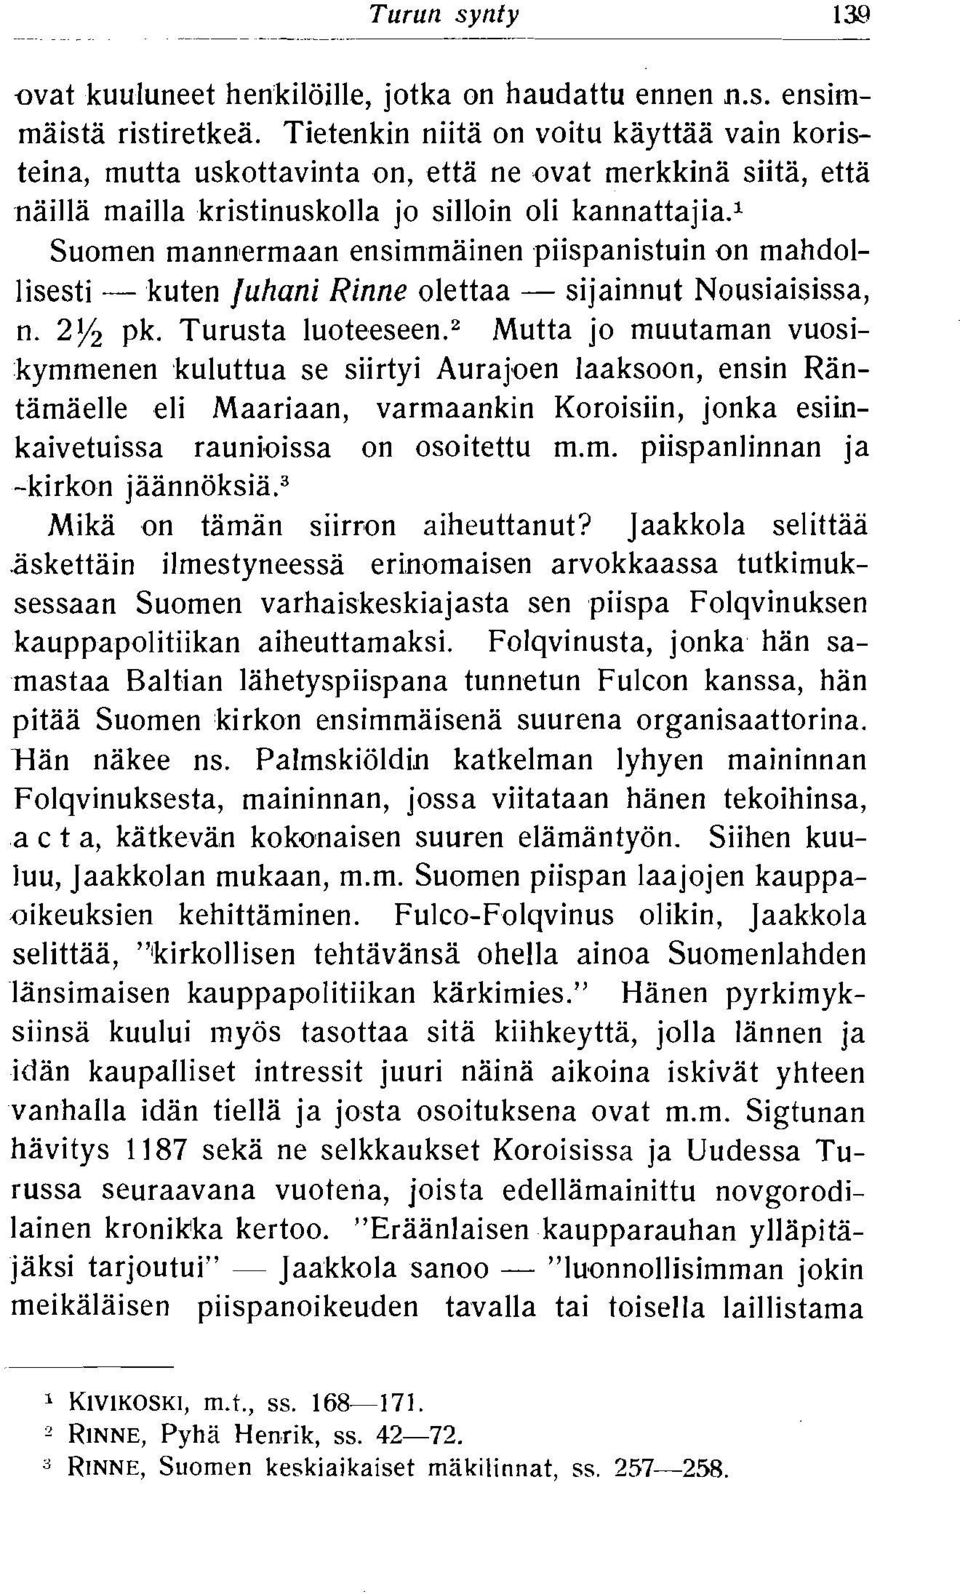 1 Suomen mannermaan ensimmainen piispanistuin on mahdollisesti - kuten luhani Rinne olettaa - sijainnut Nousiaisissa, n. 2% pk. Turusta luotee~een.